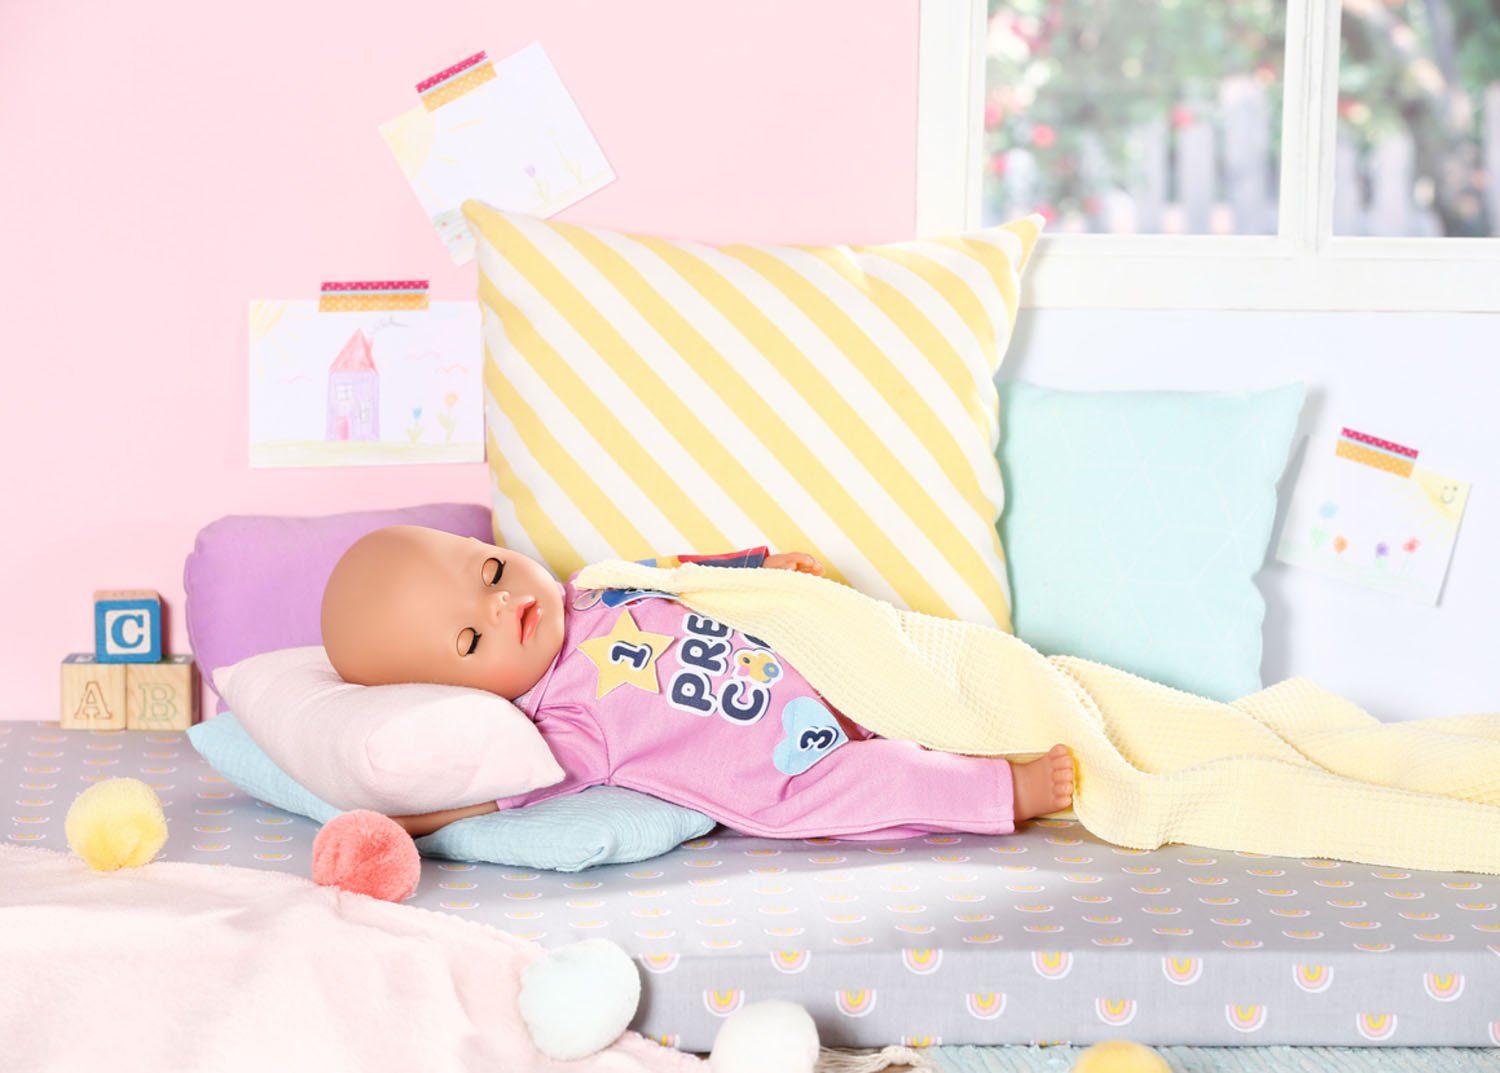 Baby Born Puppenkleidung Kleiderbügel & Einteiler mit cm, Badges, 36 Kindergarten